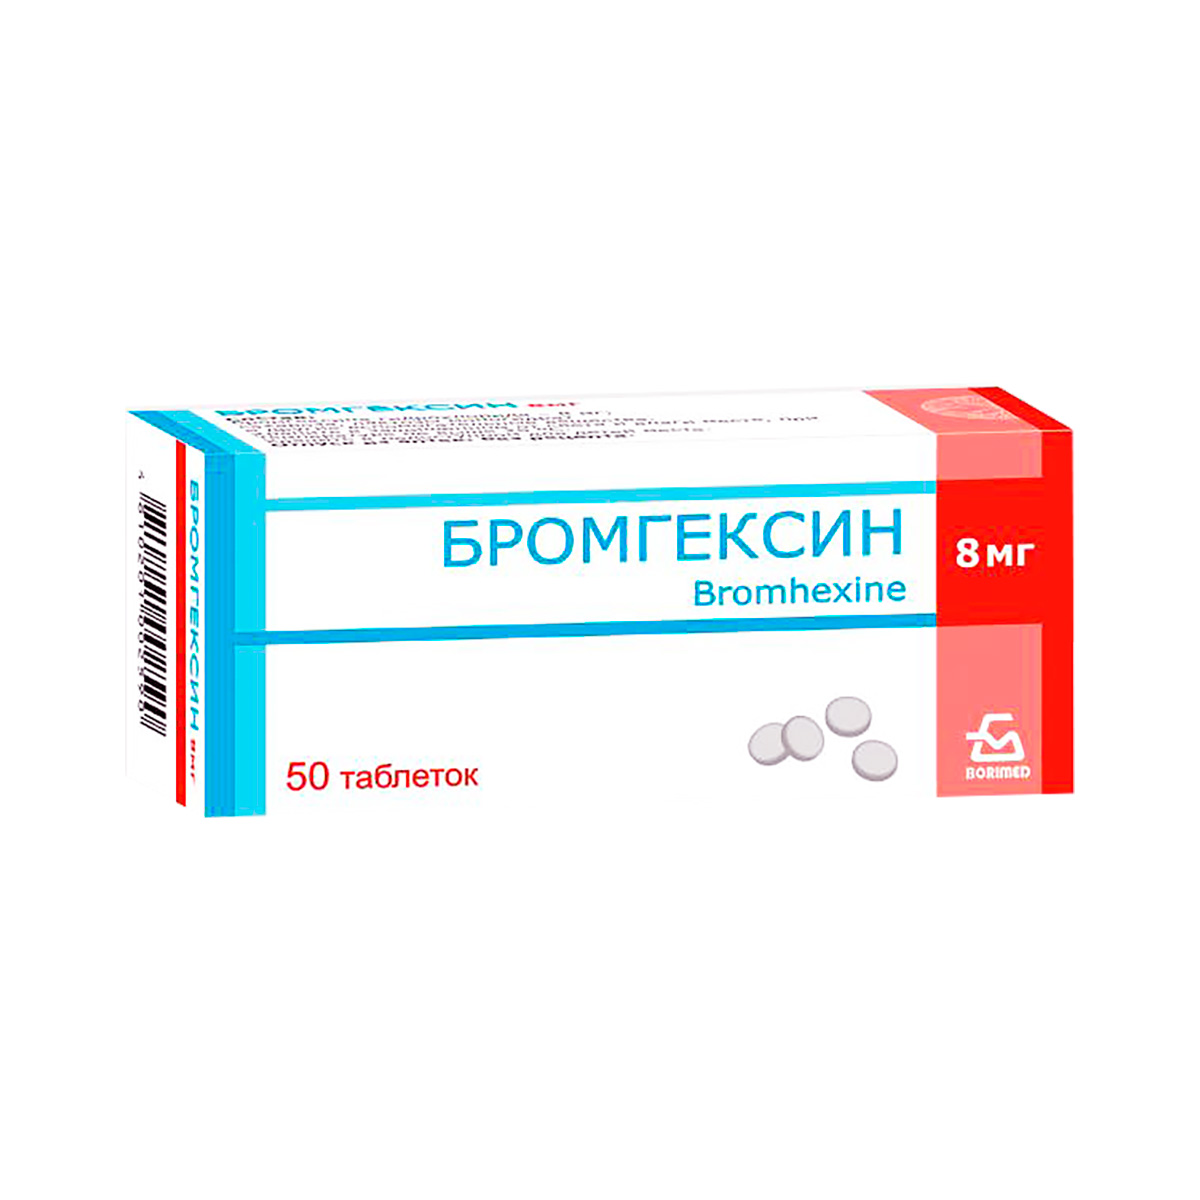 Бромгексин 8 мг таблетки 50 шт